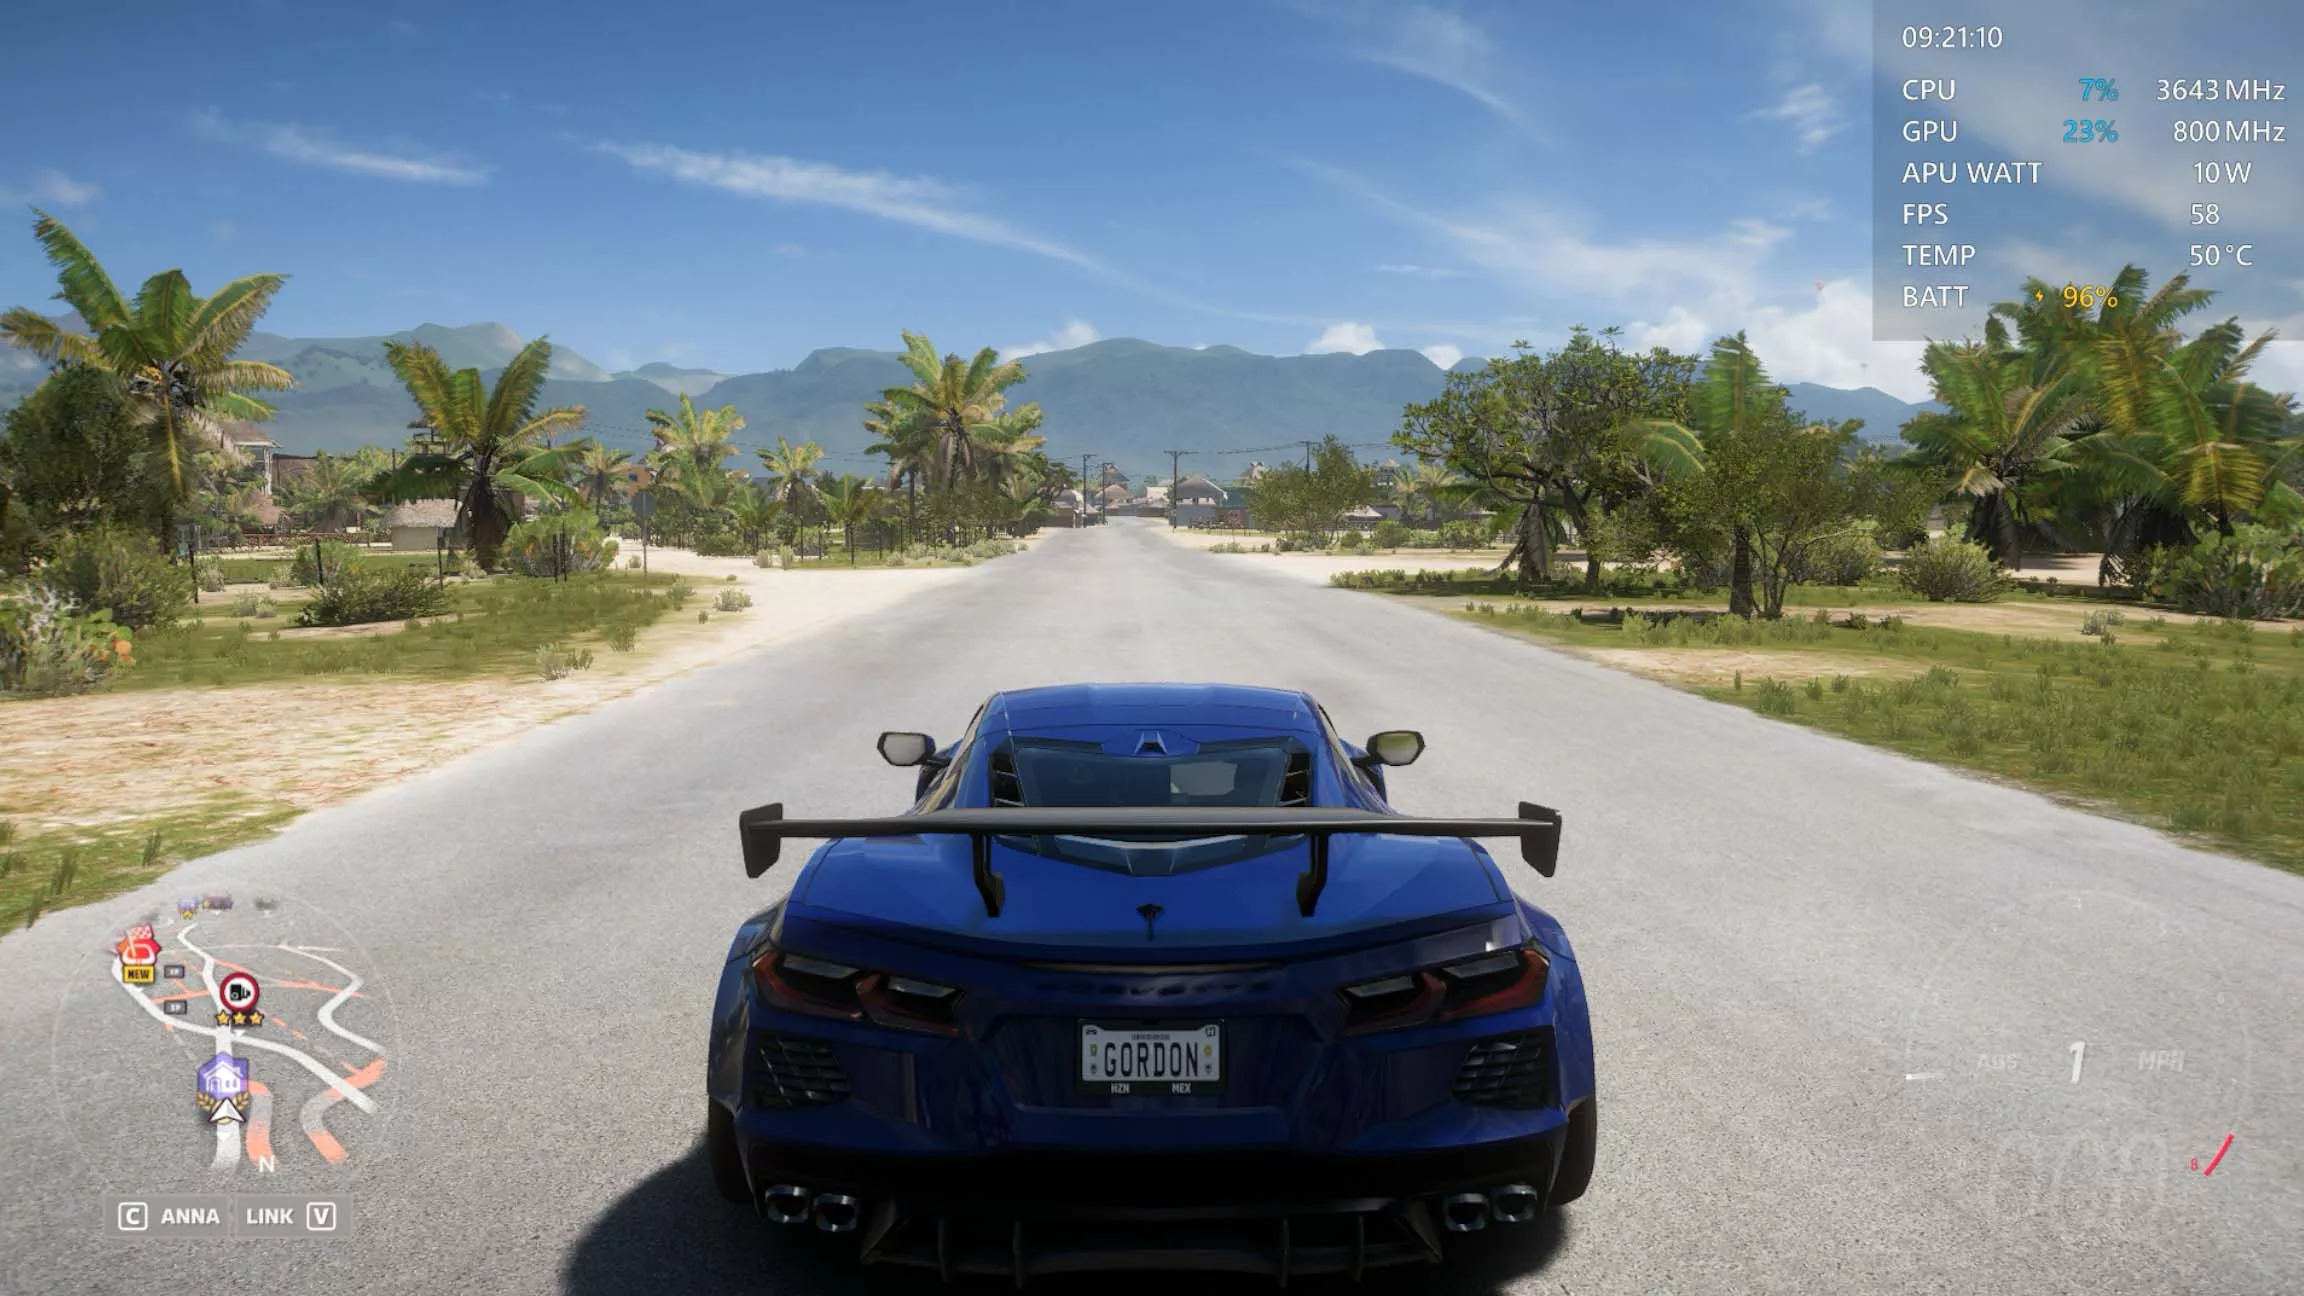 Скриншот из видеоигры с изображением автомобиля на дороге с показателями производительности в верхнем углу экрана.